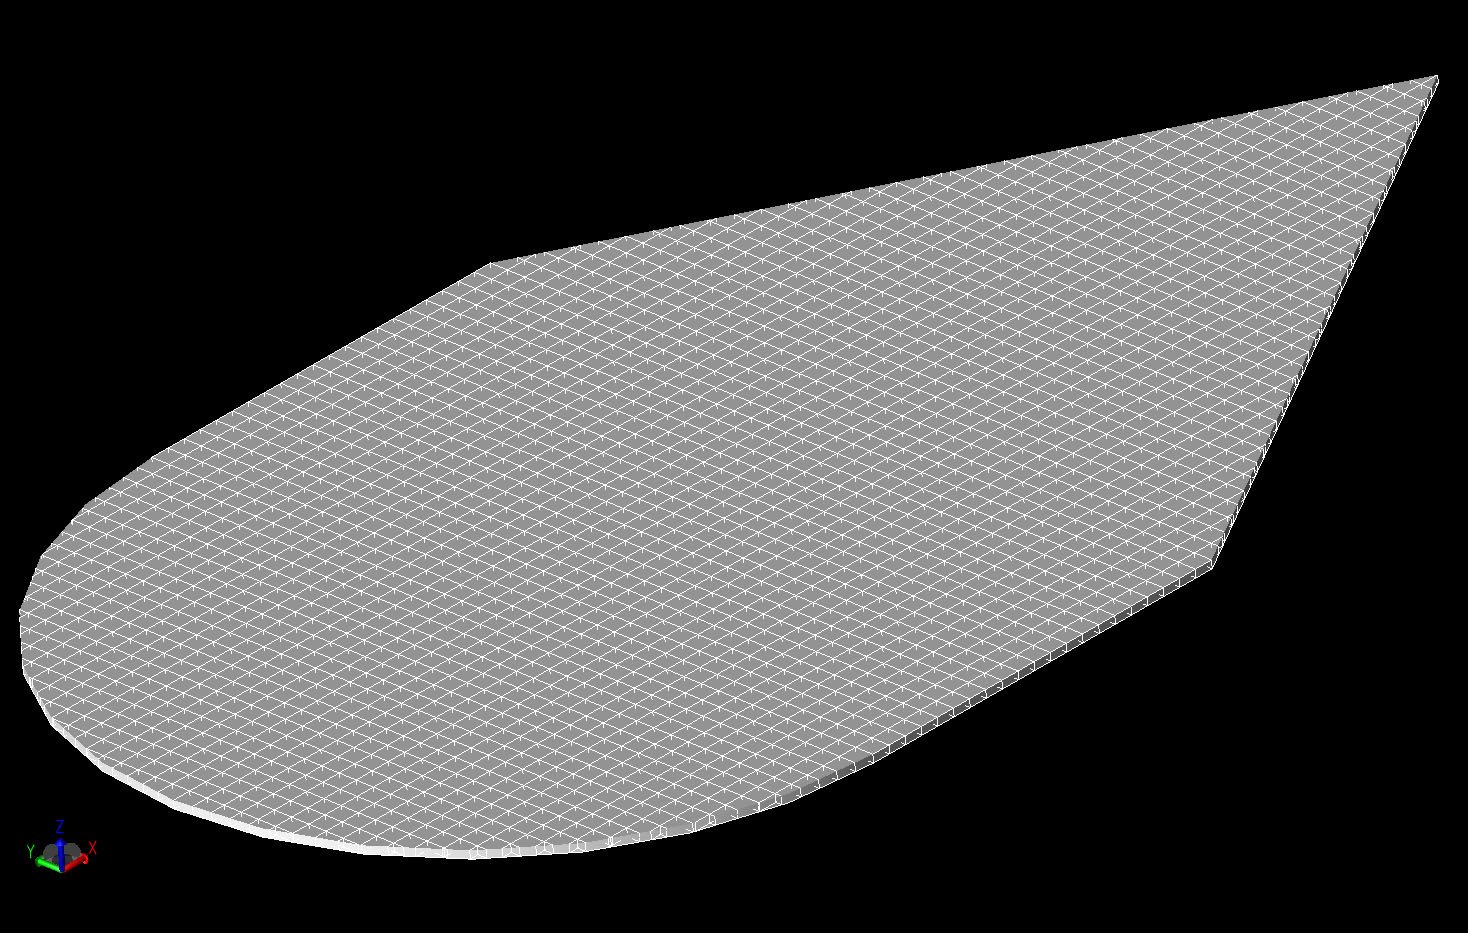 Abbildung 5A Dreidimensionale Ansicht des geometrischen Netzes des Keilplattenzylinders.